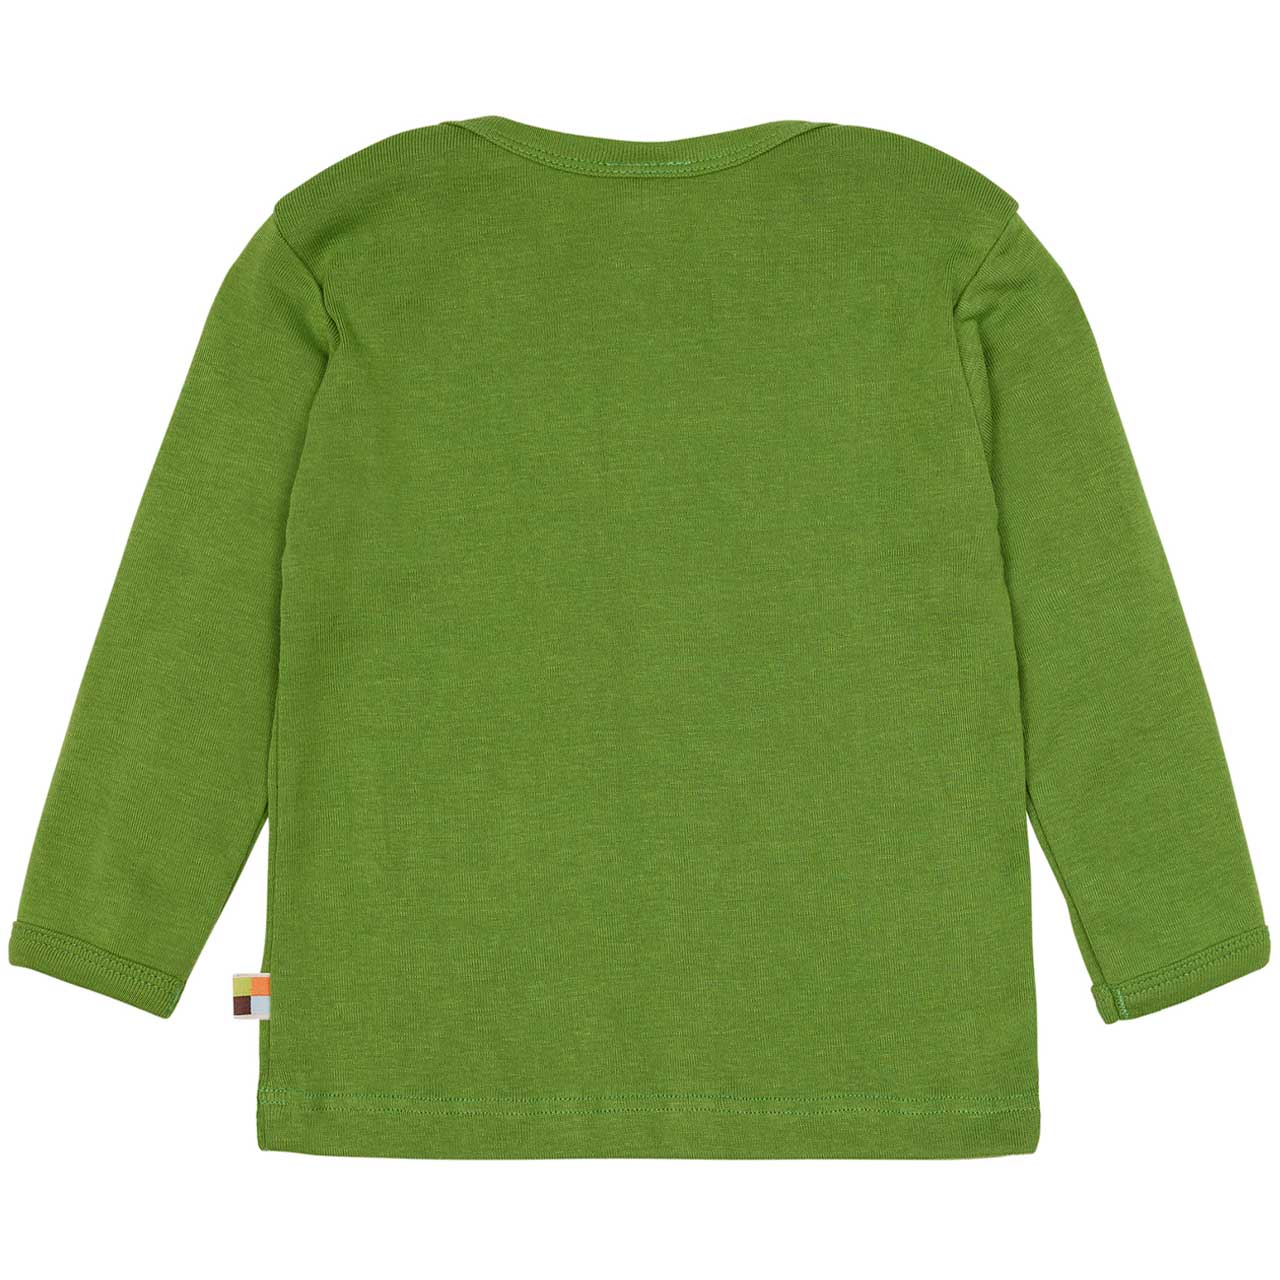 Feinripp Shirt weich und elastisch 100% Baumwolle grün